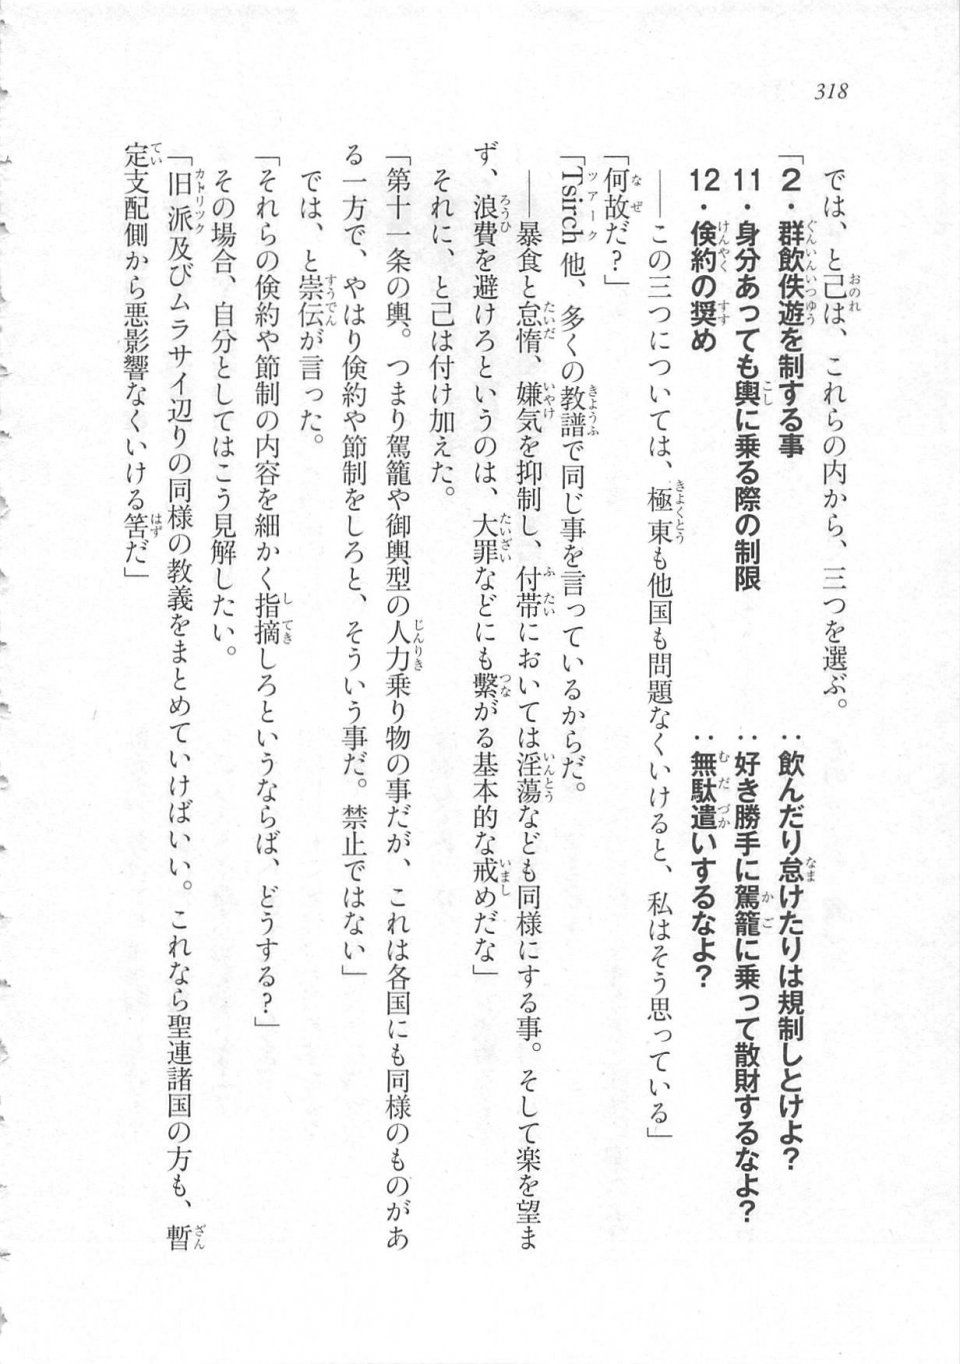 Kyoukai Senjou no Horizon LN Sidestory Vol 3 - Photo #322